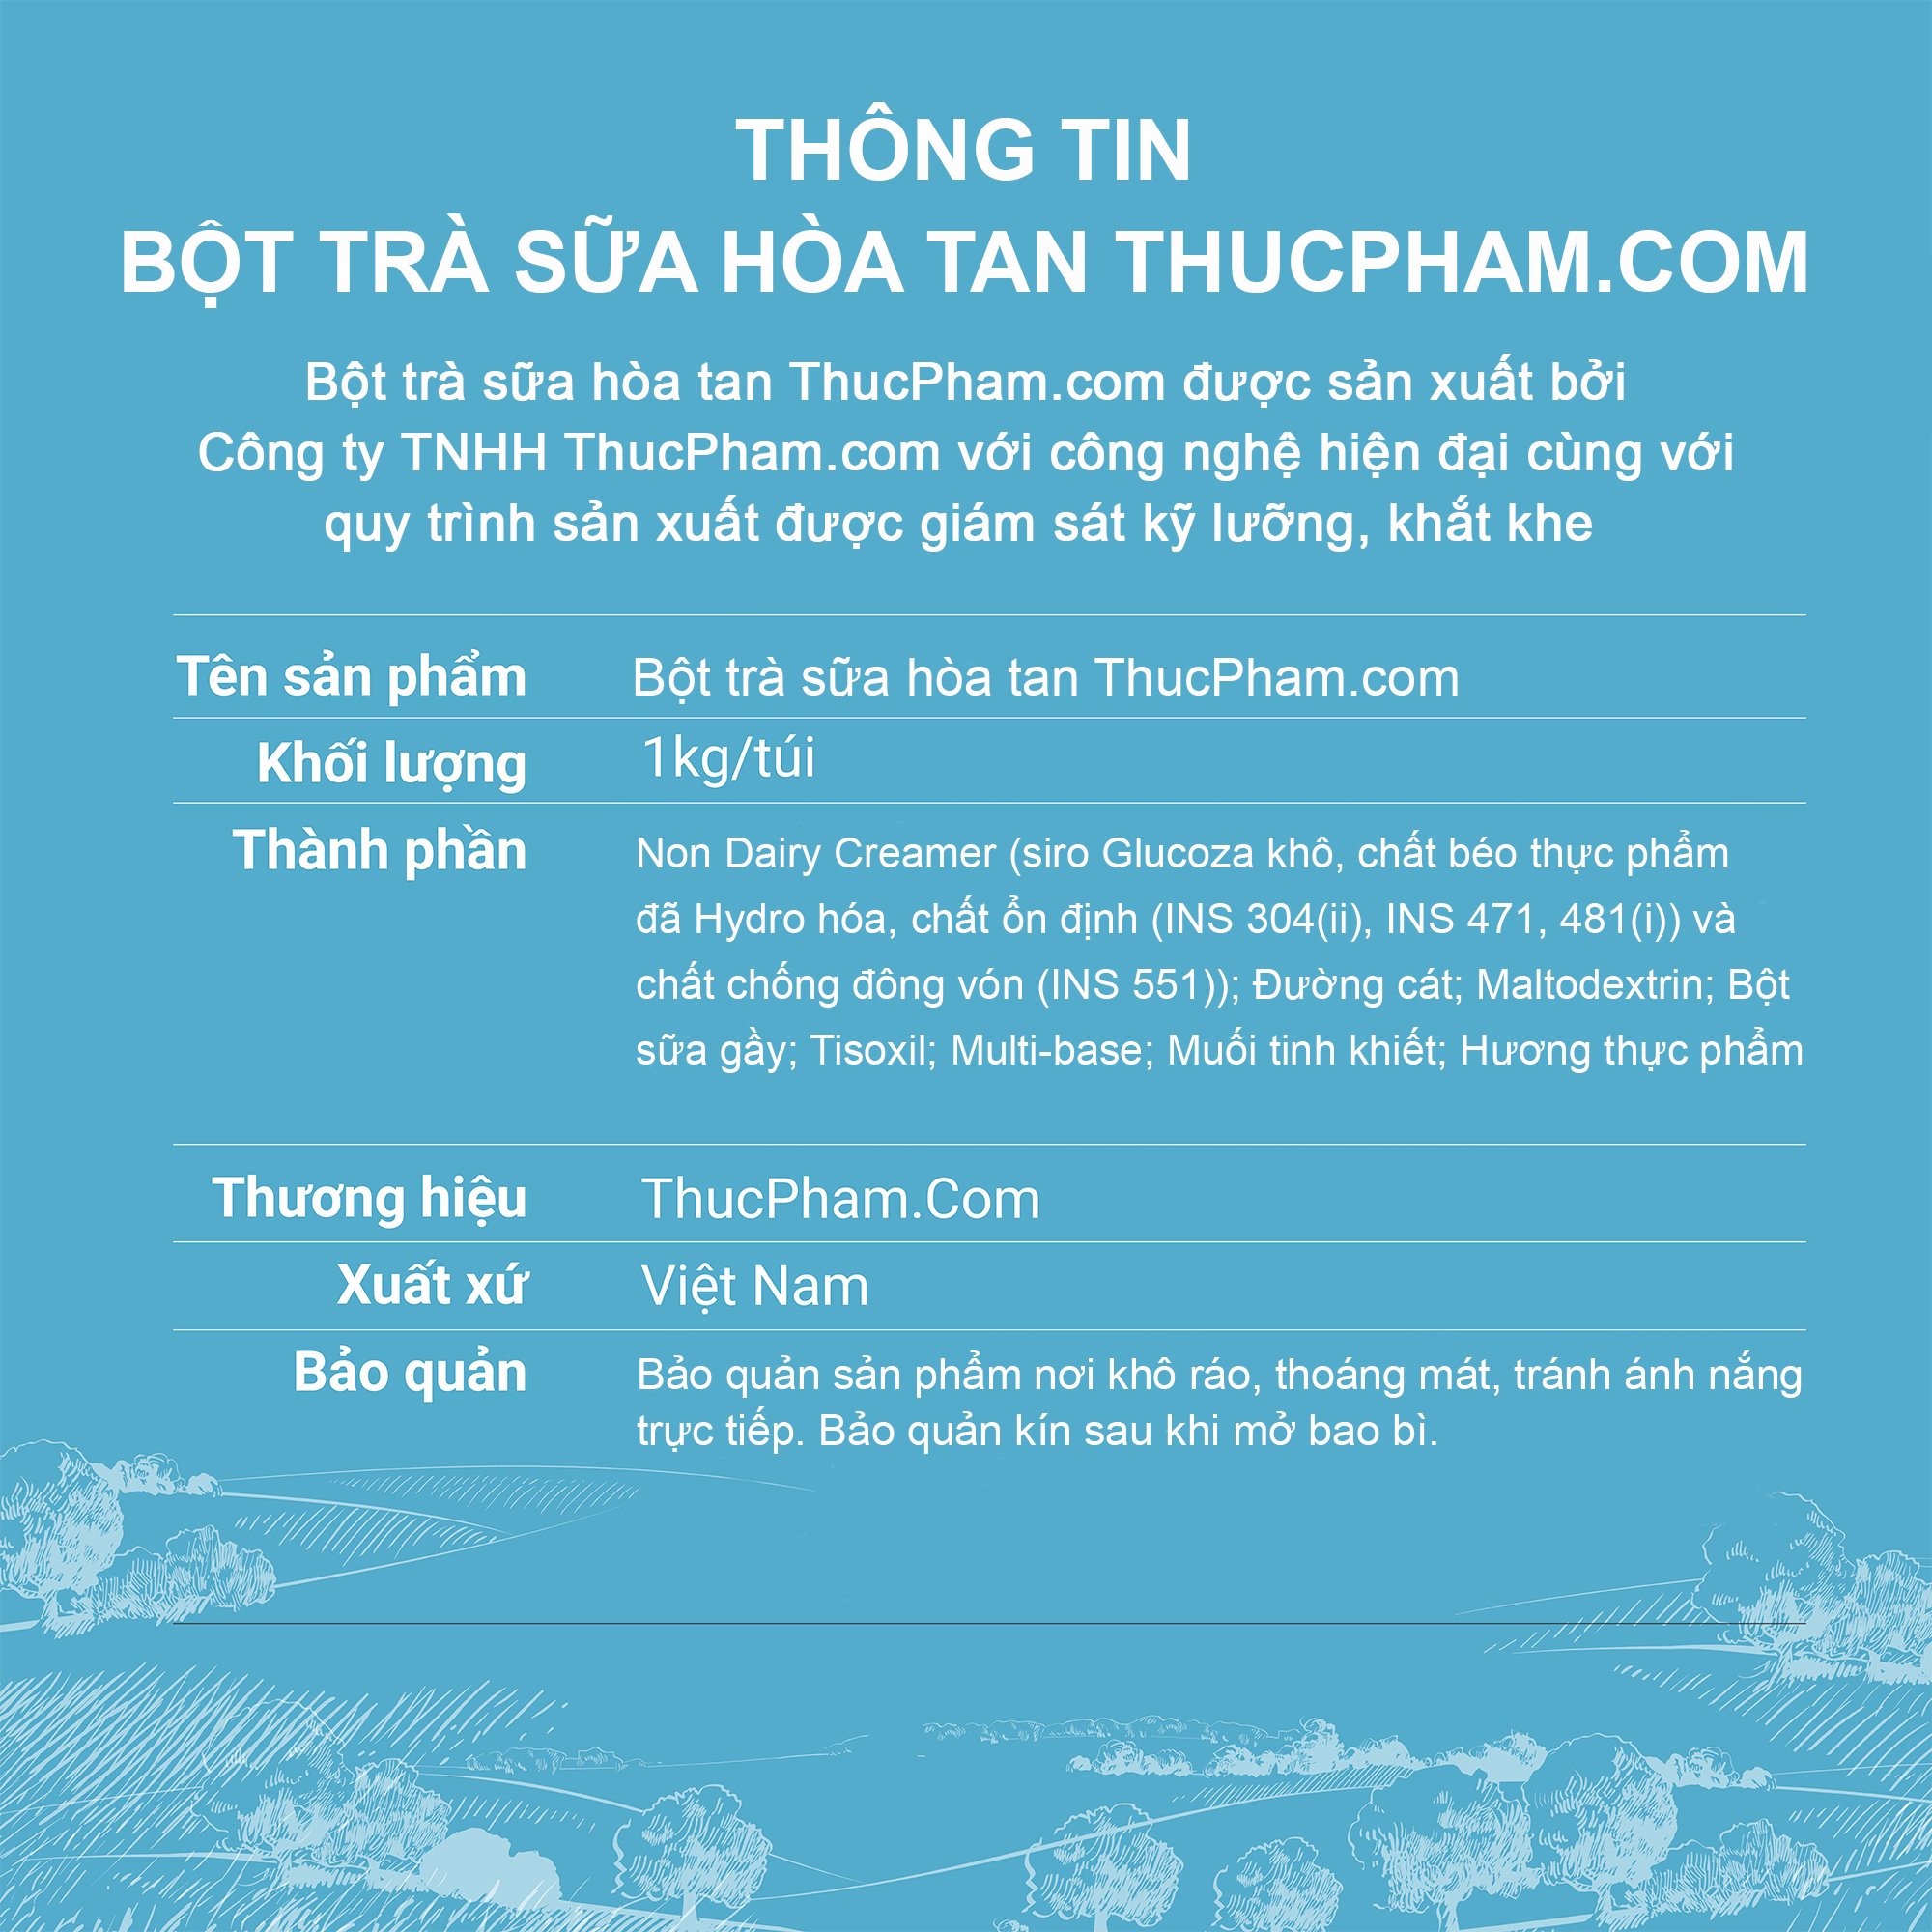 [ĂN BAO GHIỀN️] Bột Trà Sữa Hòa Tan ThucPham.com Vị Khoai Môn - 1kg - Thơm Ngon Vị Trà, Ngậy Vị Khoai Môn